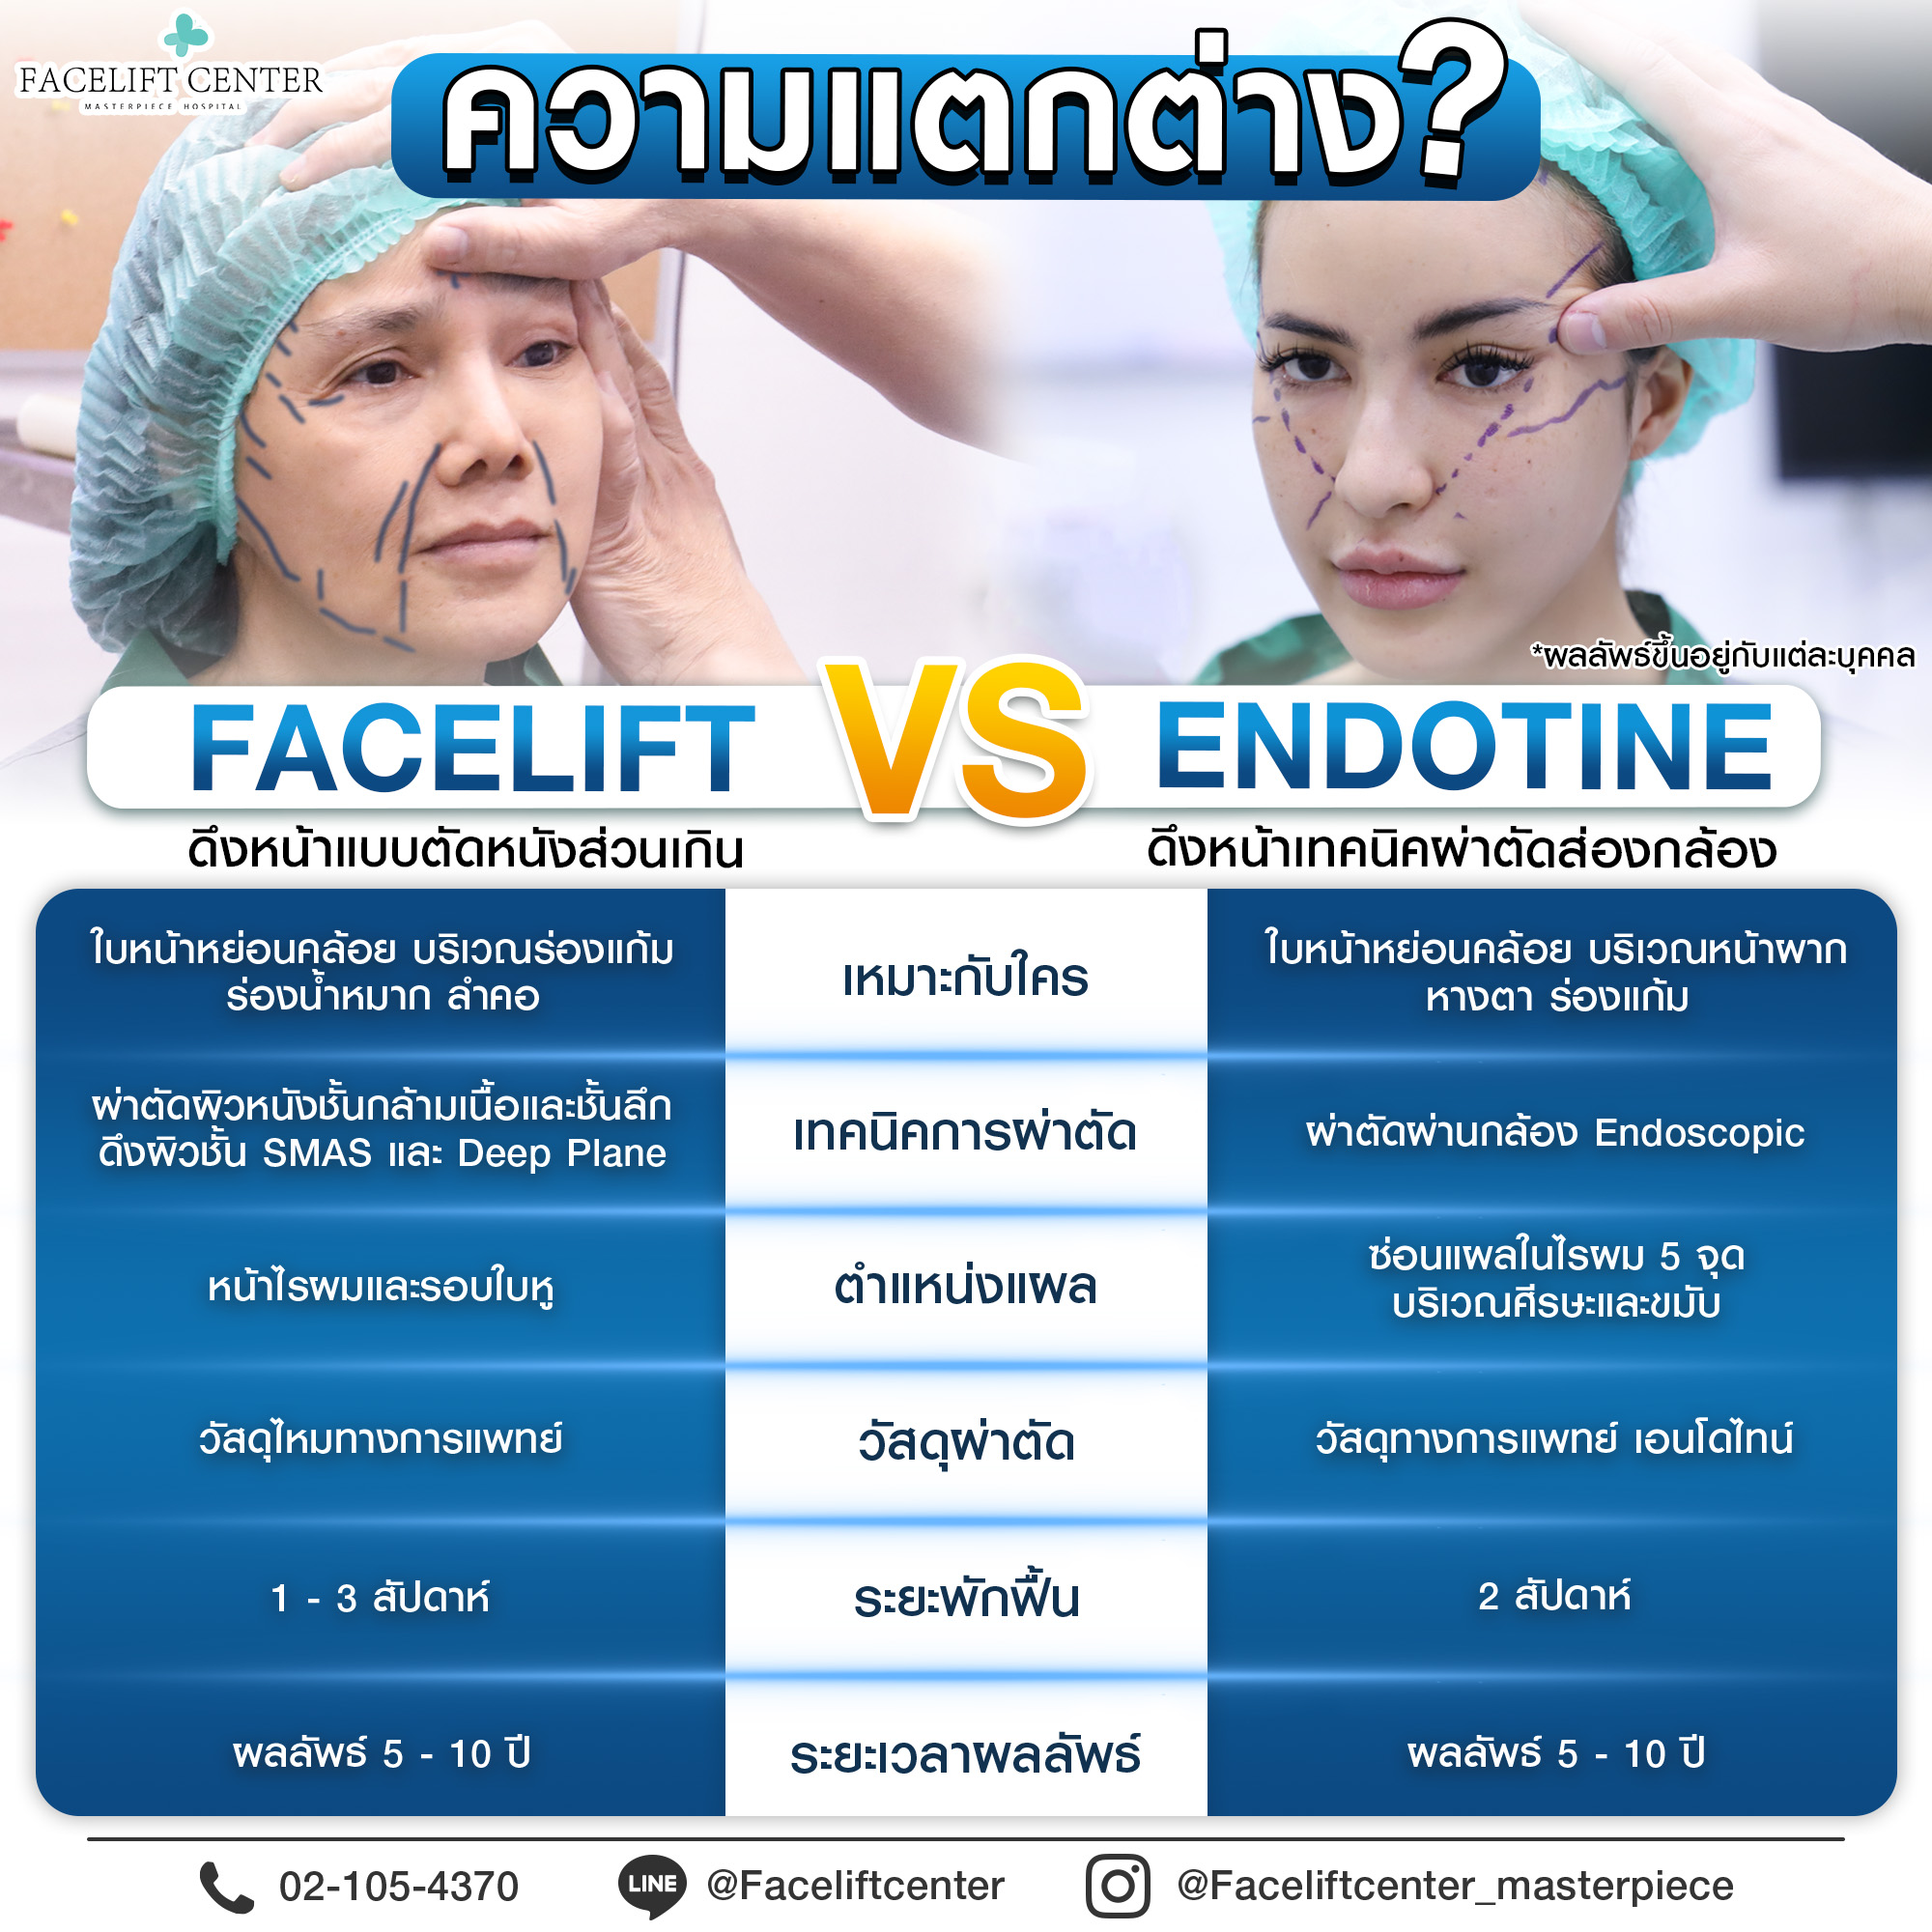 ความแตกต่างFacelift Vs Endotine